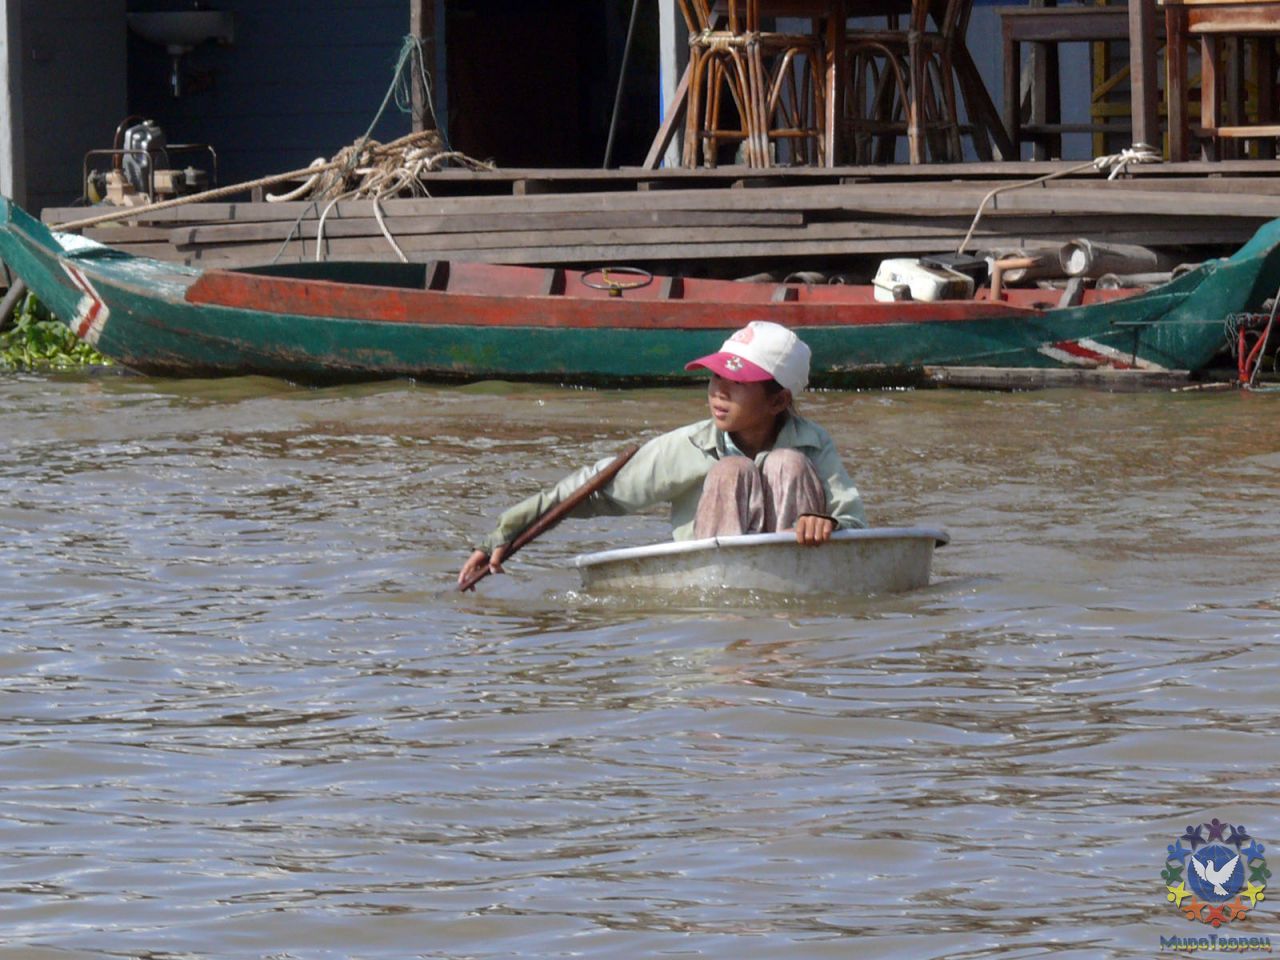 Первой лодкой для местных ребятишек обычно является тазик. Они ловко оправляют своим судном, гоняются за туристическими катерами, добираются до школы - Камбоджа декабрь 2010г.